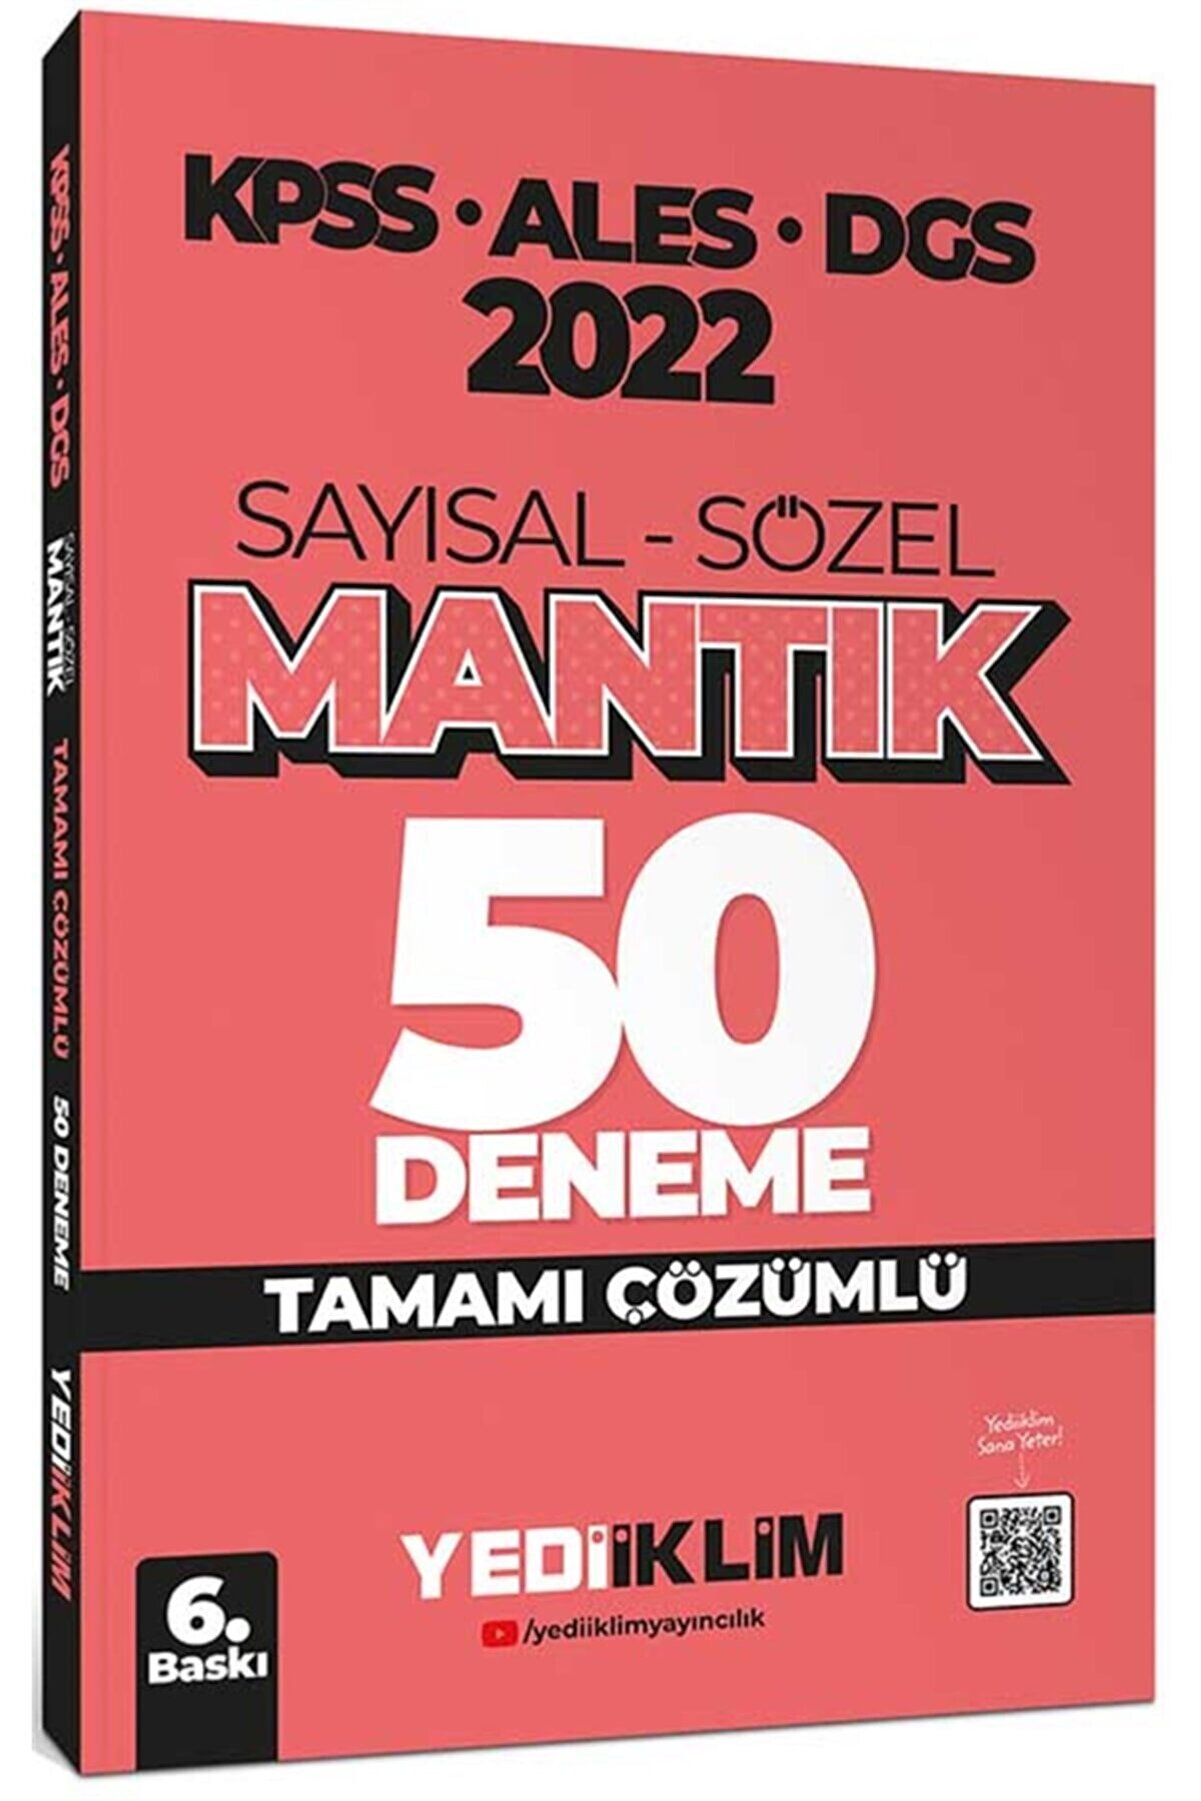 Yediiklim Yayınları 2022 Kpss-ales-dgs Sayısal Sözel Mantık Tamamı Çözümlü 50 Deneme